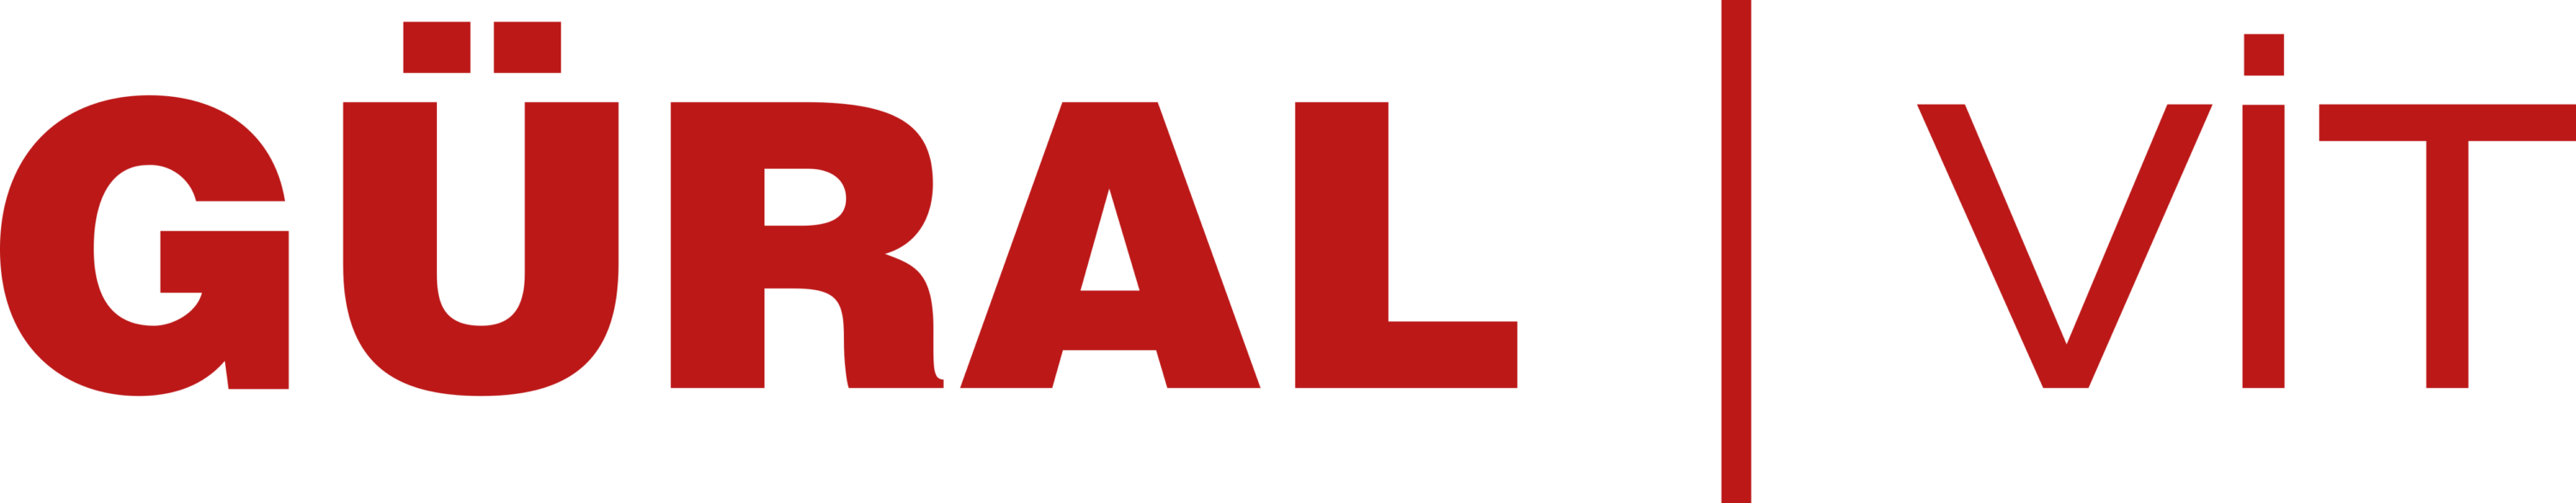 Gural Vit Logo